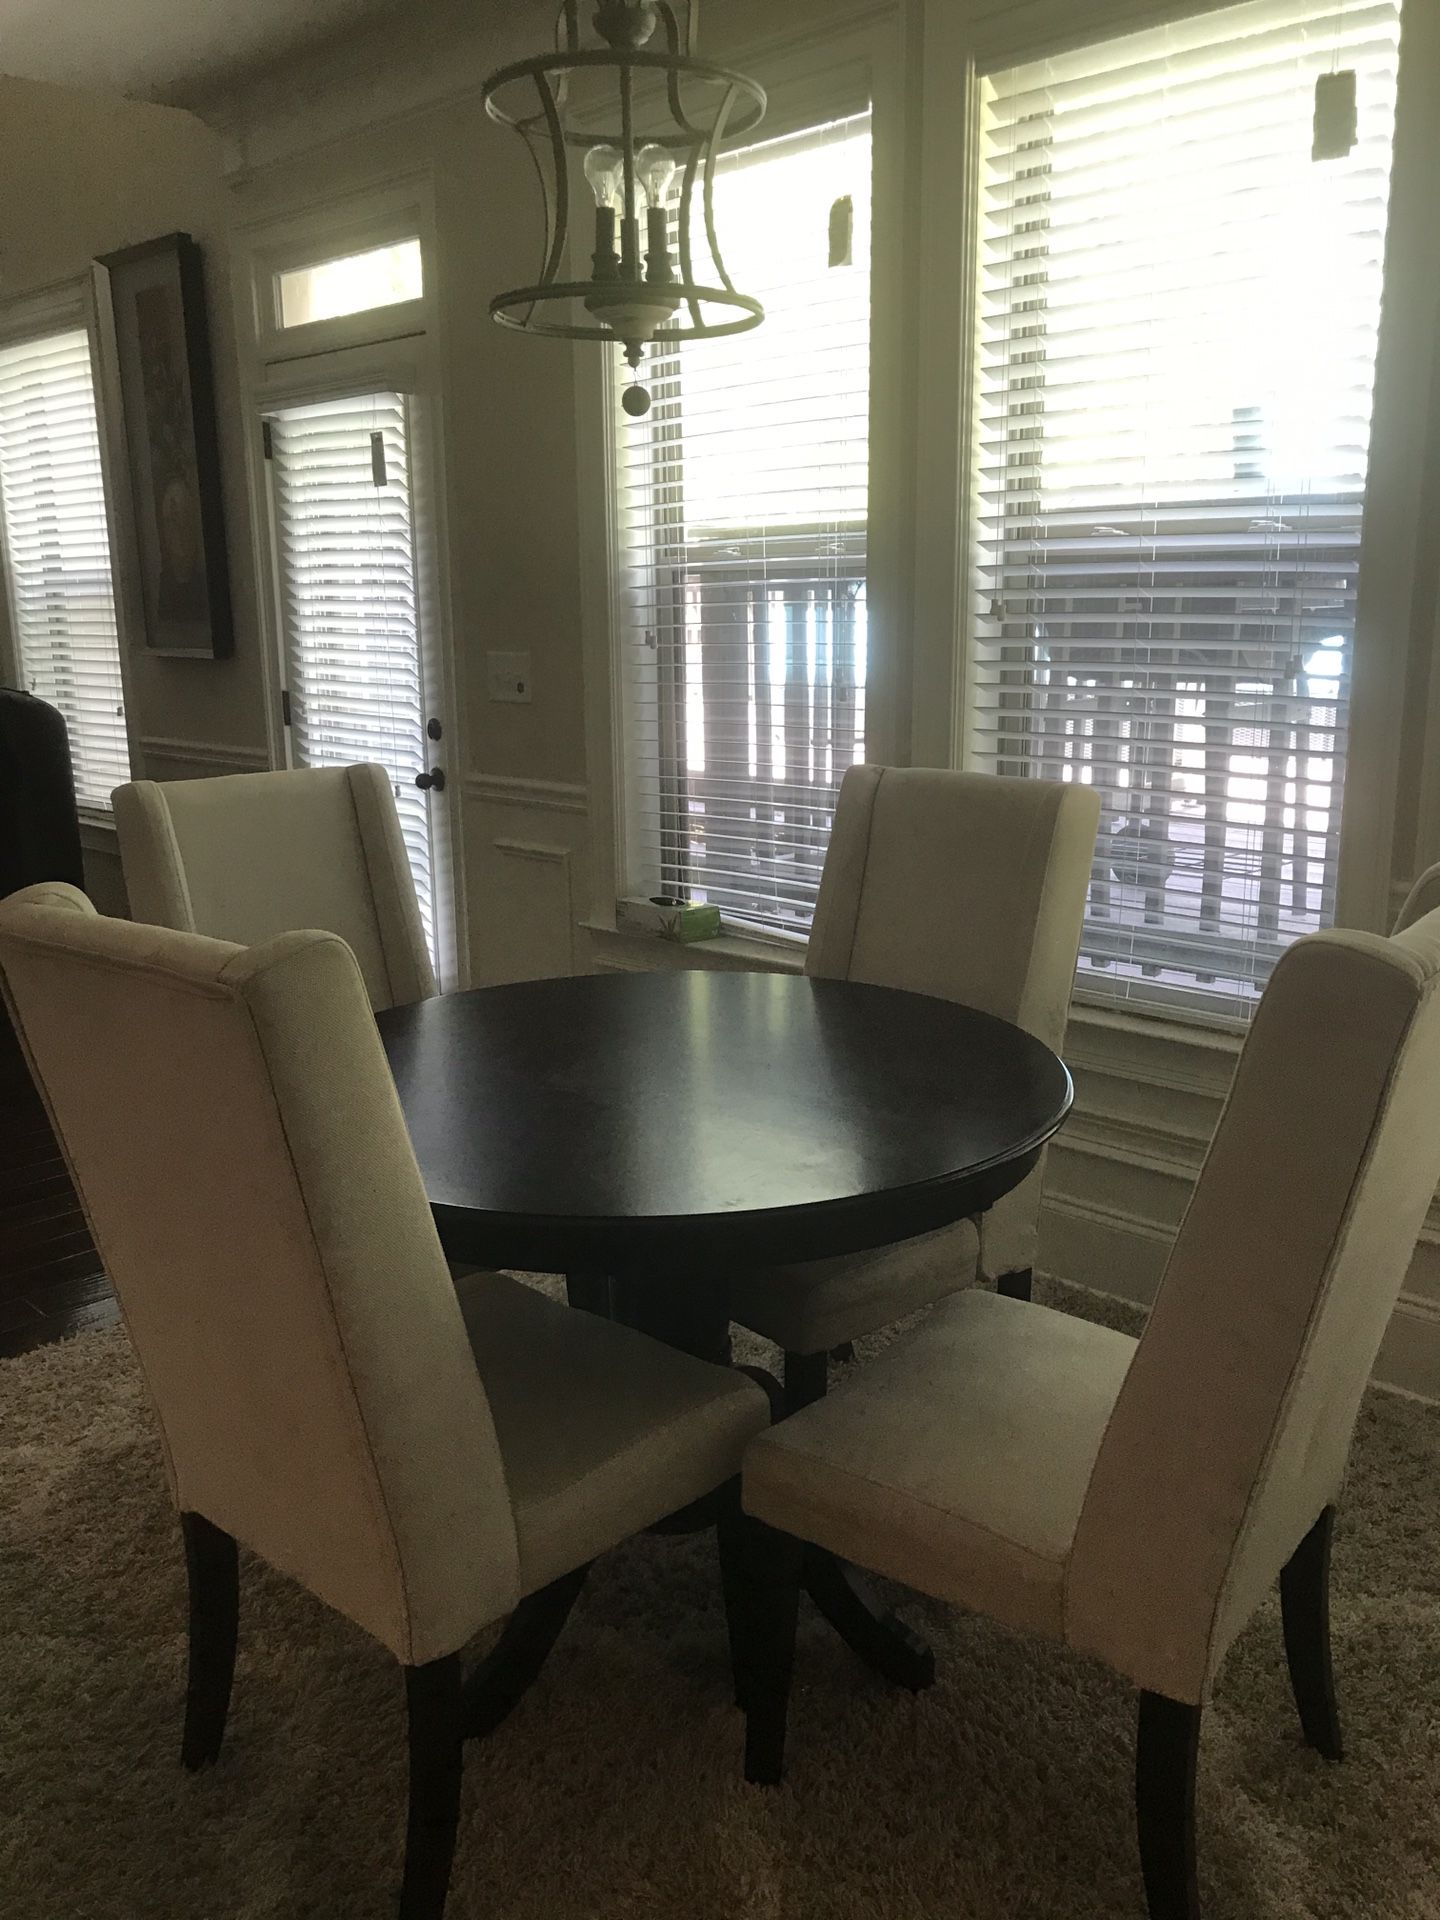 Nice table and chair set